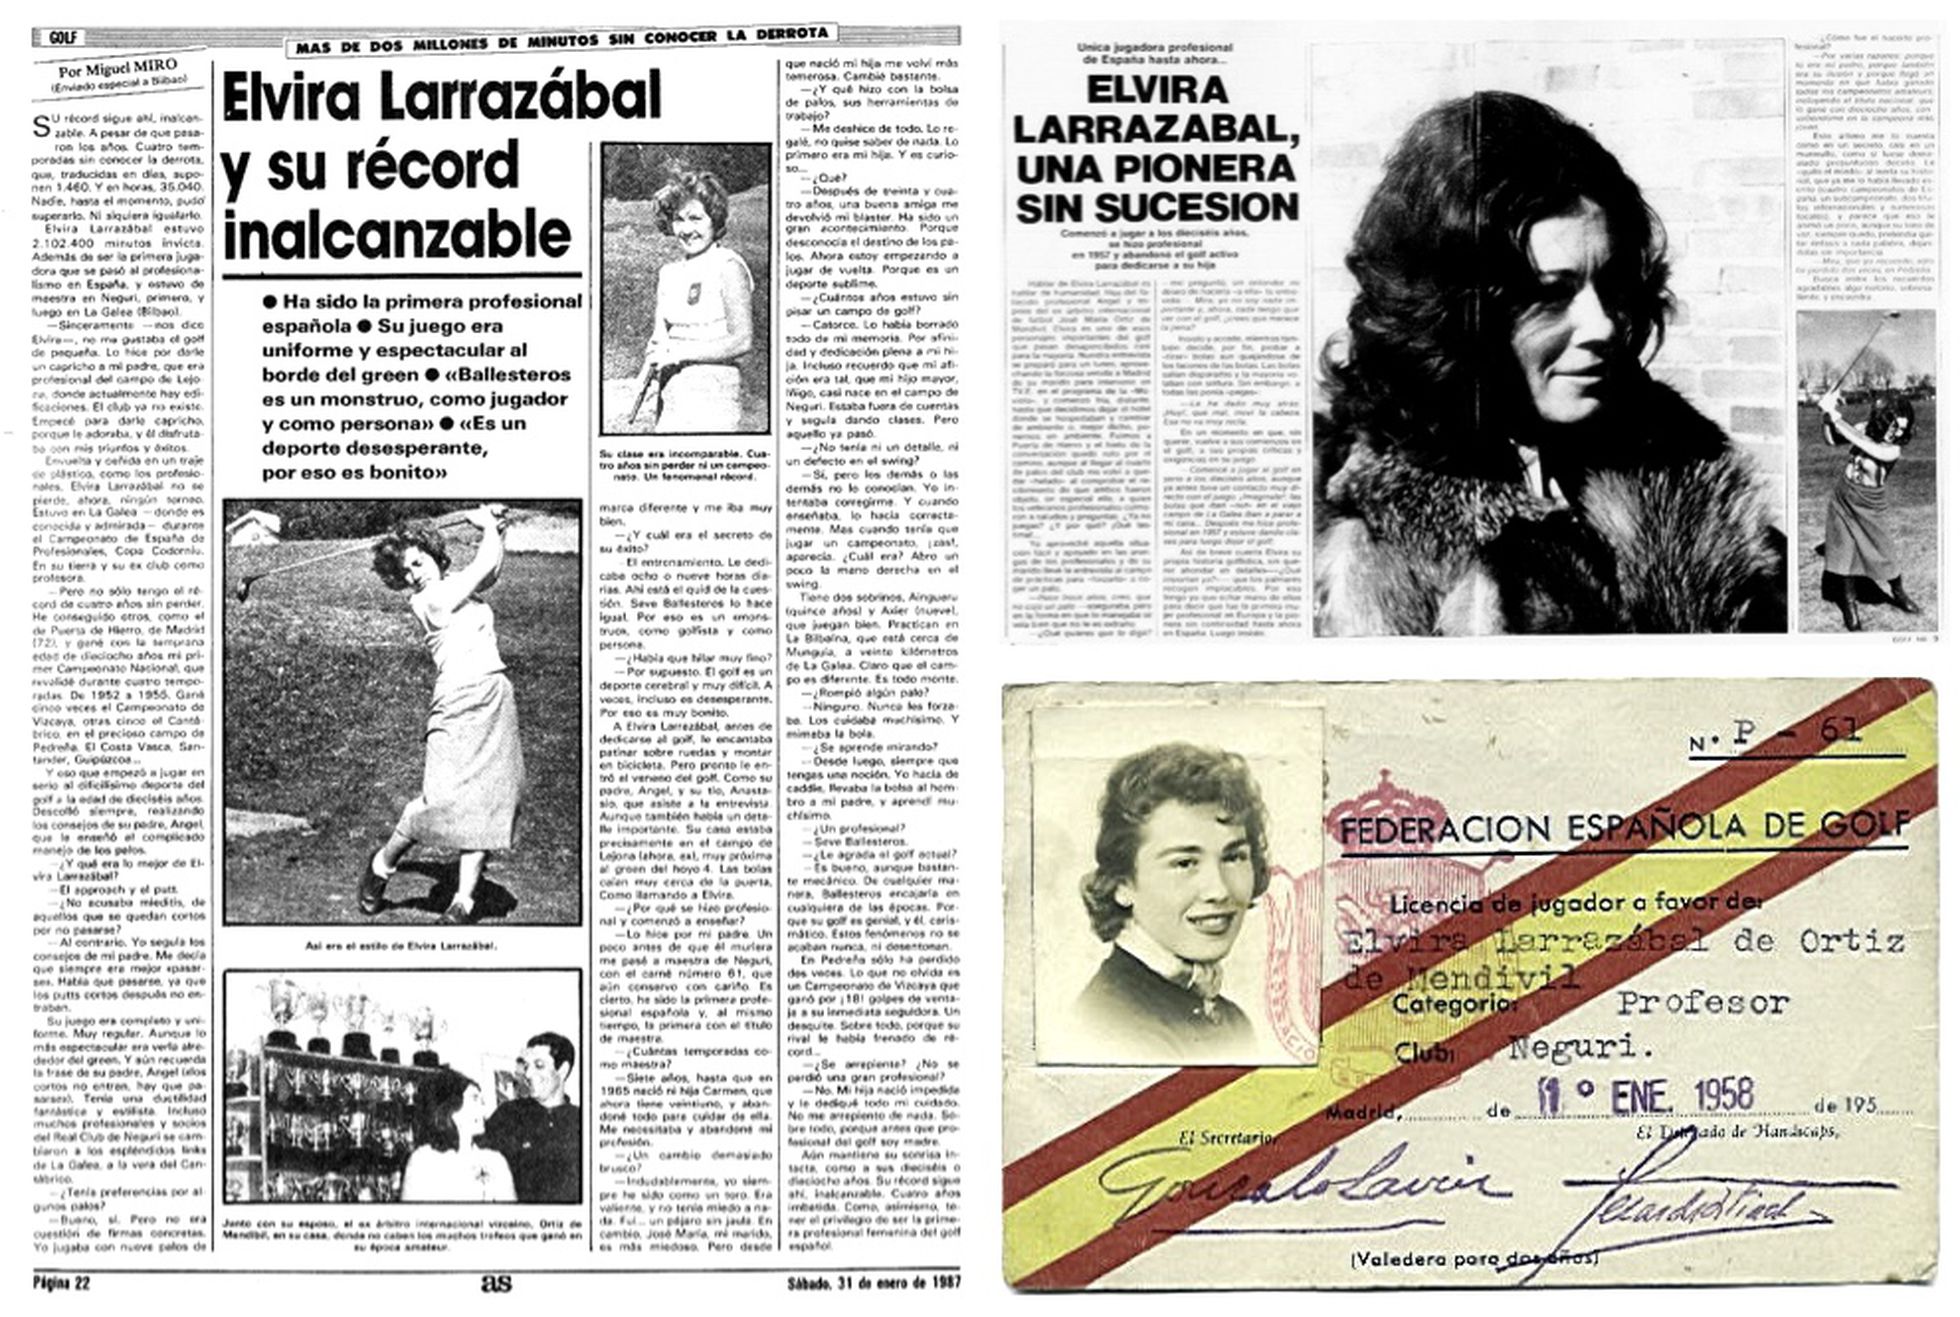 Recortes de prensa y carnet de Elvira Larrazabal como profesional, de 1958.